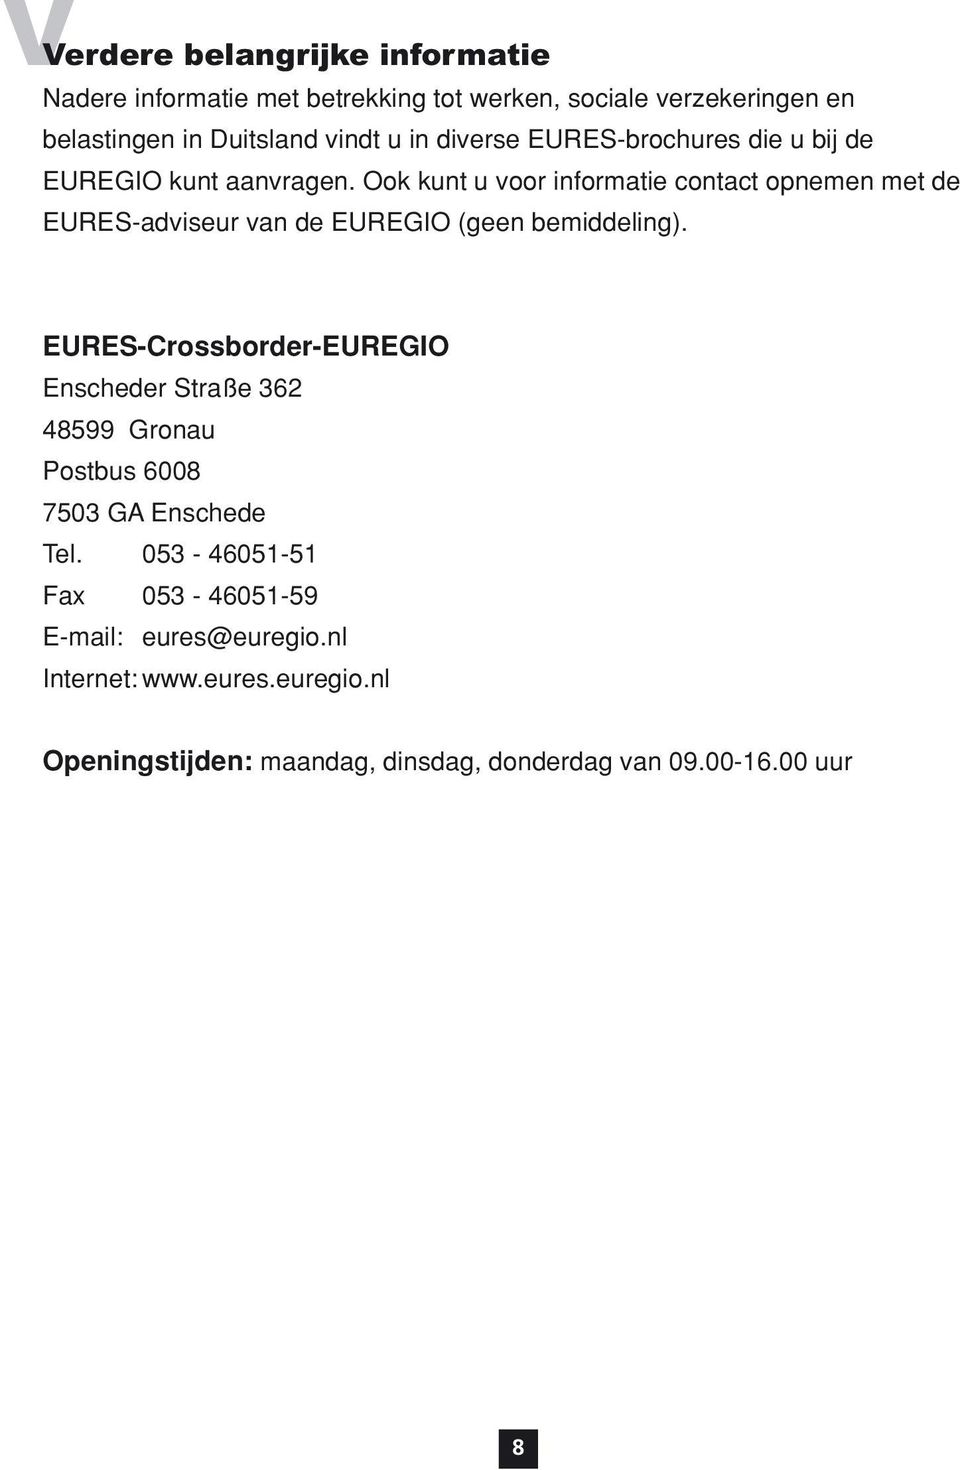 Ook kunt u voor informatie contact opnemen met de EURES-adviseur van de EUREGIO (geen bemiddeling).